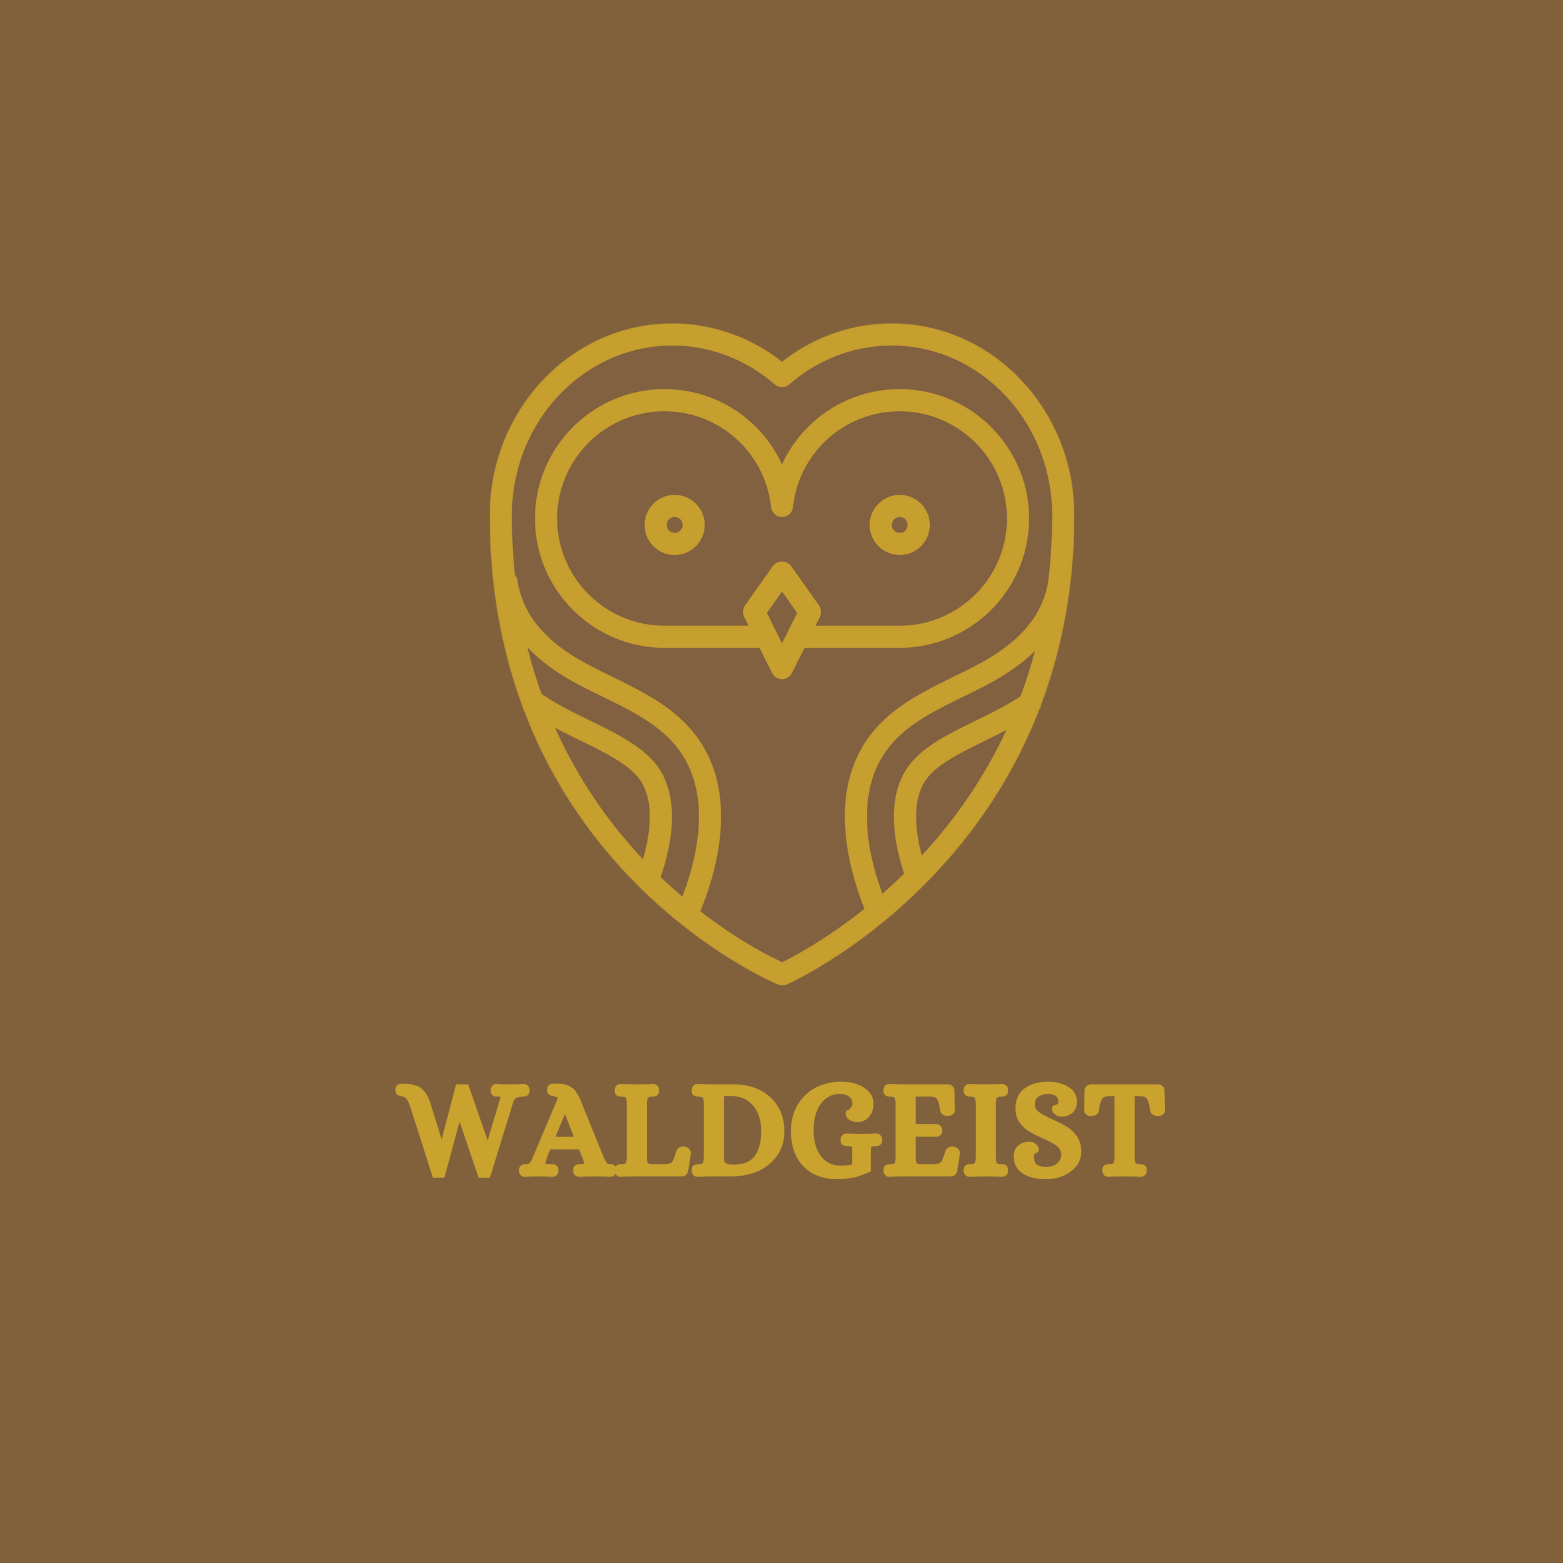 Waldgeist